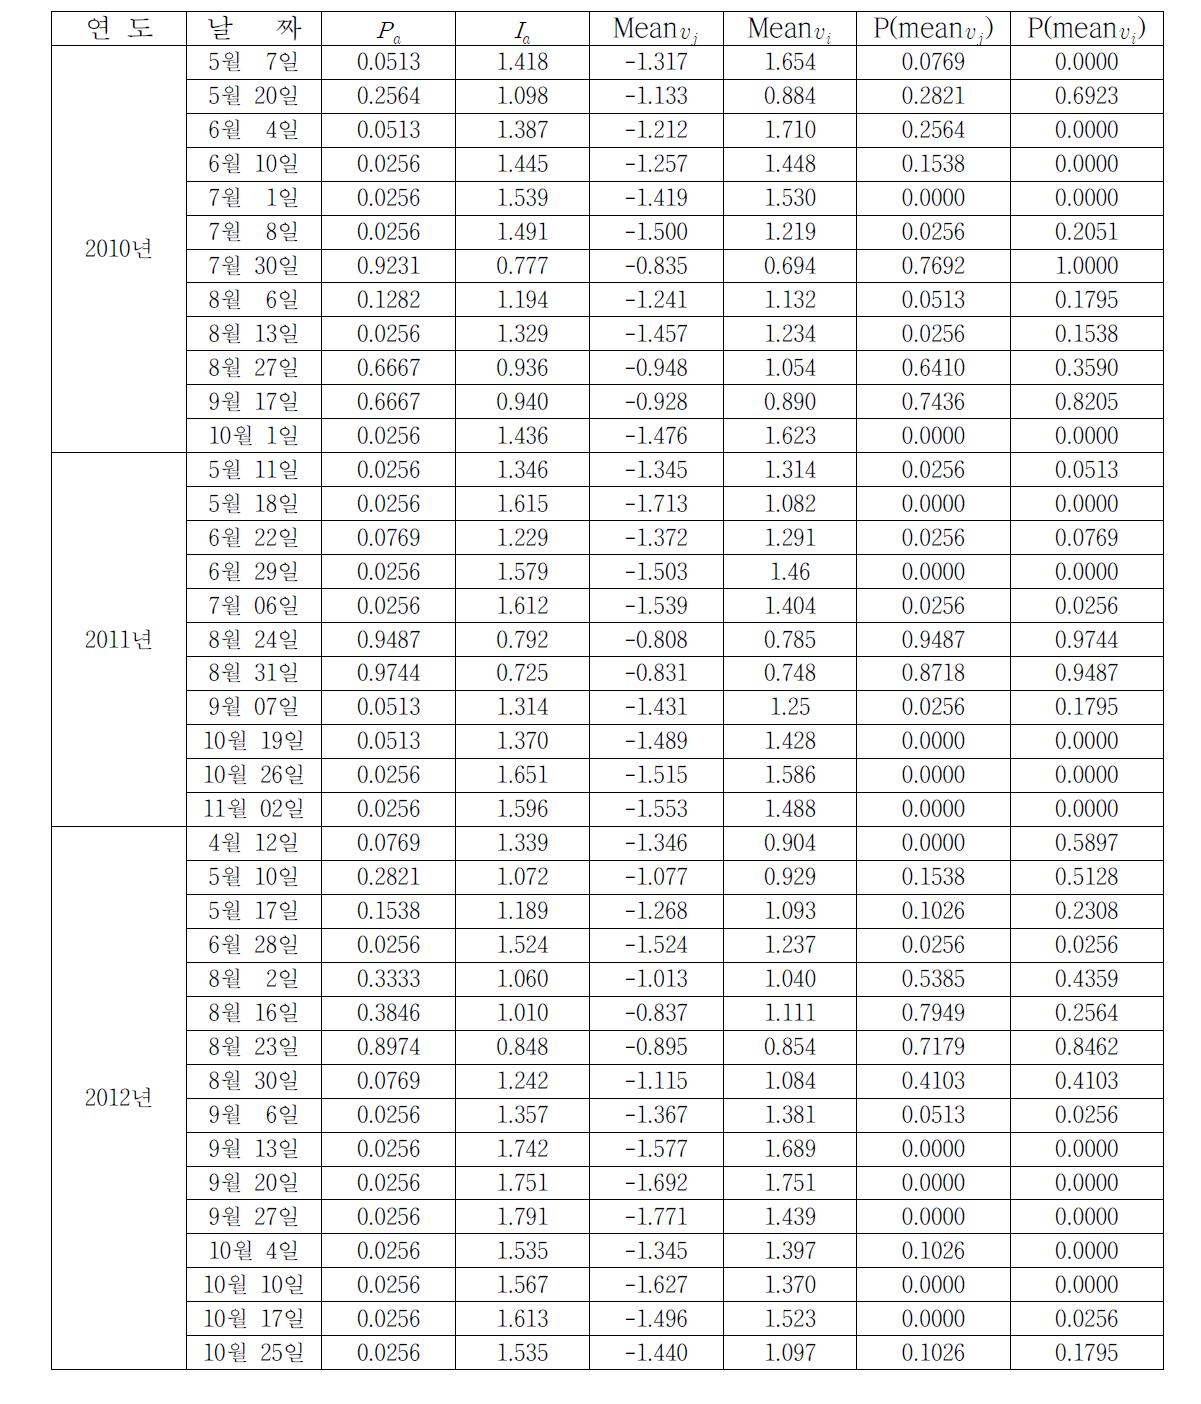 톱다리개미허리노린재 시기별 aggregation index의 변화 (2010, 2011, 2012년)